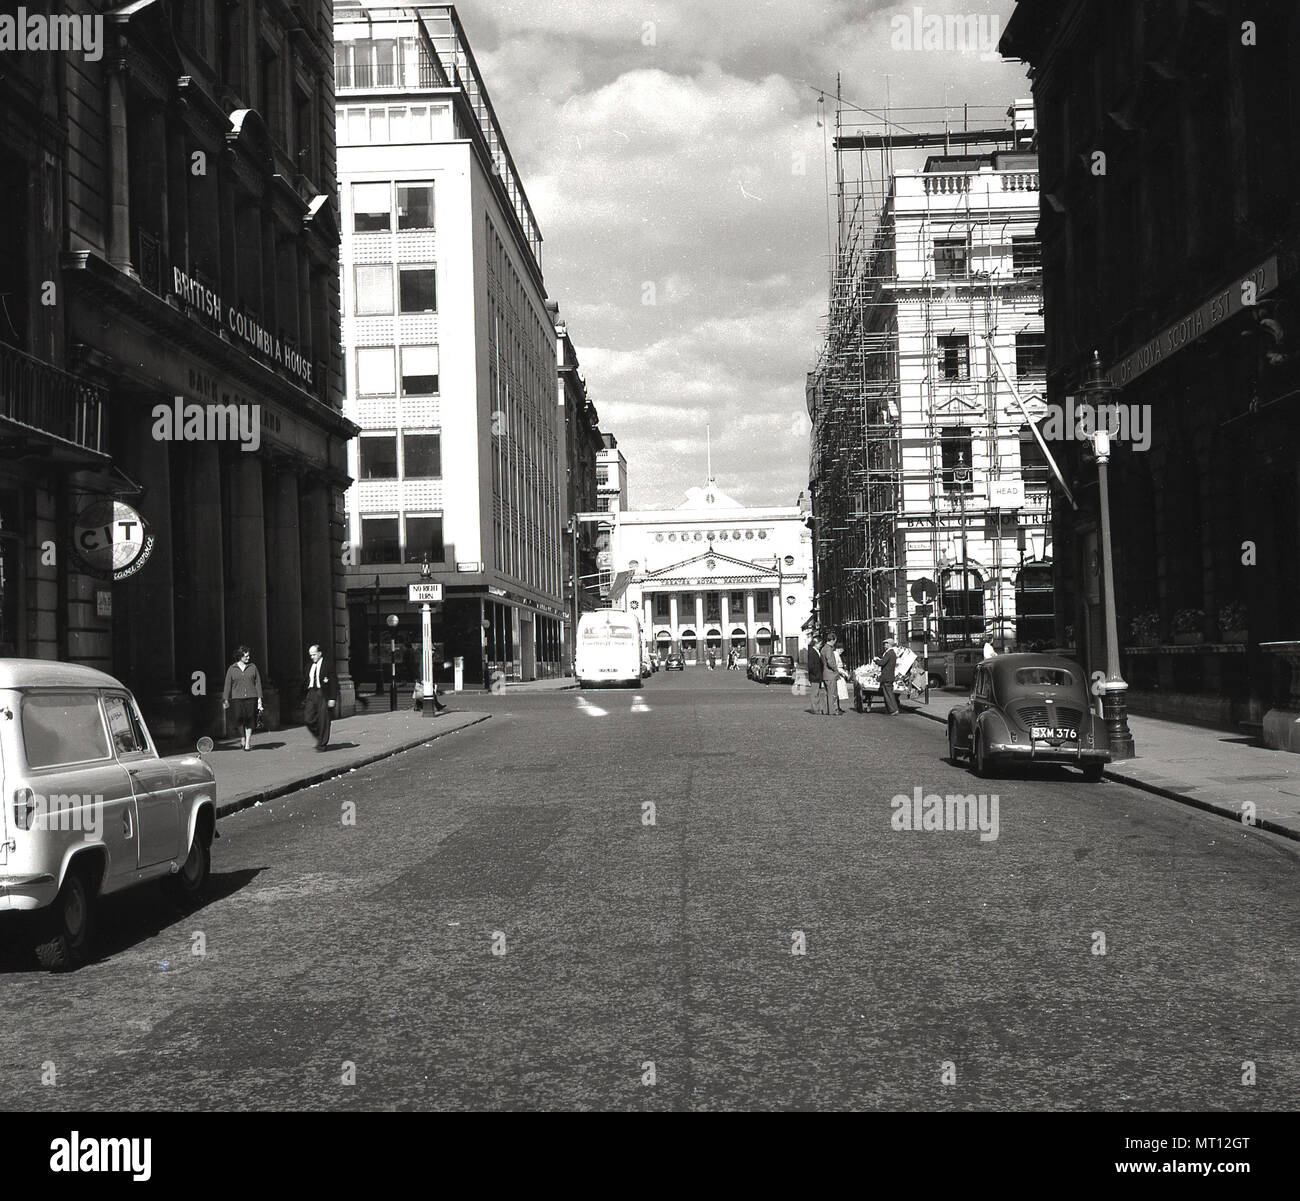 1960er Jahre, historisch, Blick auf eine ruhige Londoner Straße in Westminster, mit Autos und Gebäuden, darunter auf der linken Seite des Bildes, British Commonwealth House. Stockfoto